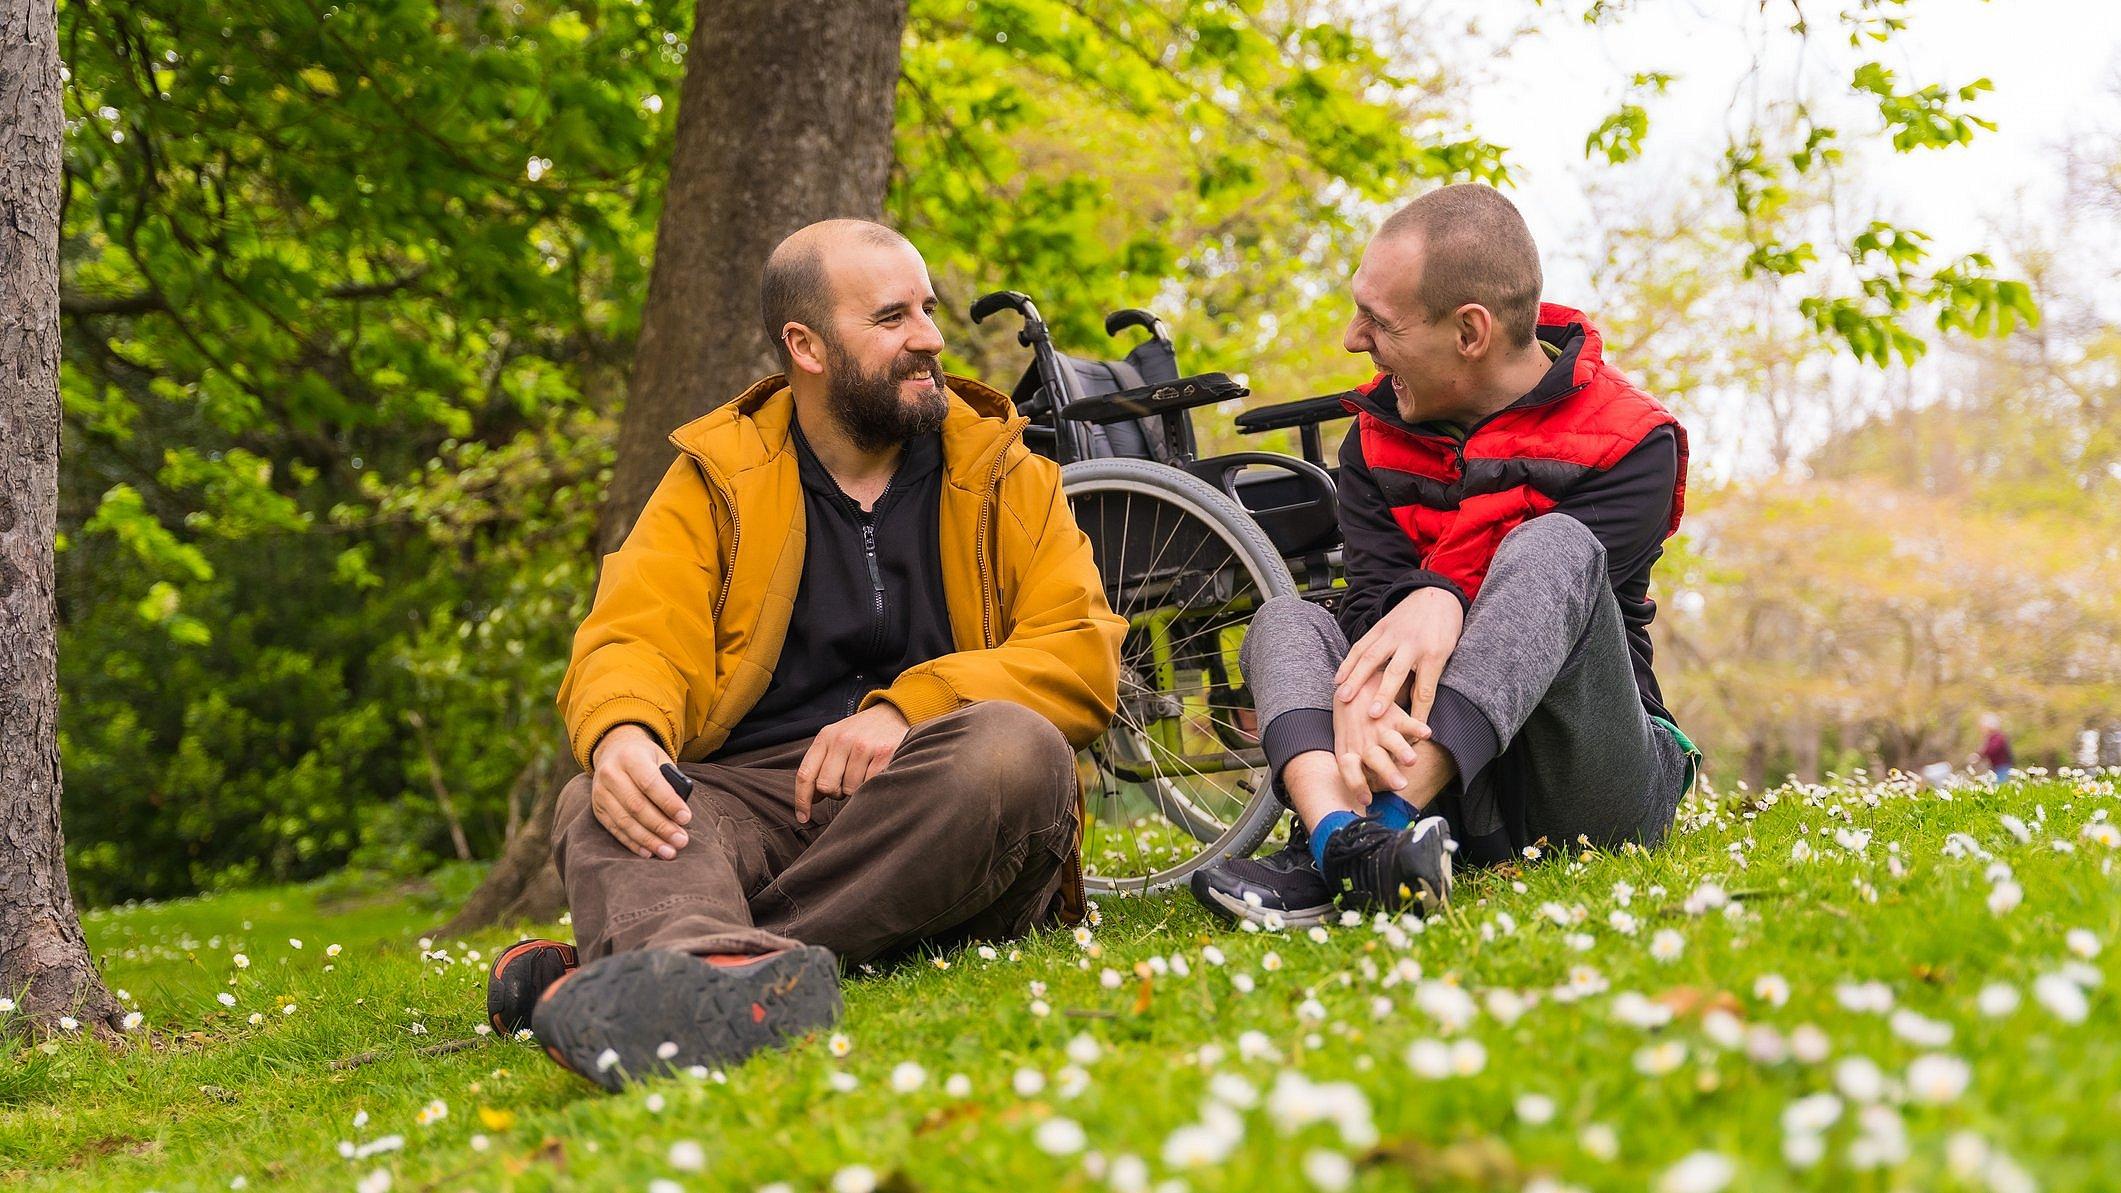 Zwei Männer sitzen im Gras, einer hat eine Behinderung. Sie unterhalten sich.